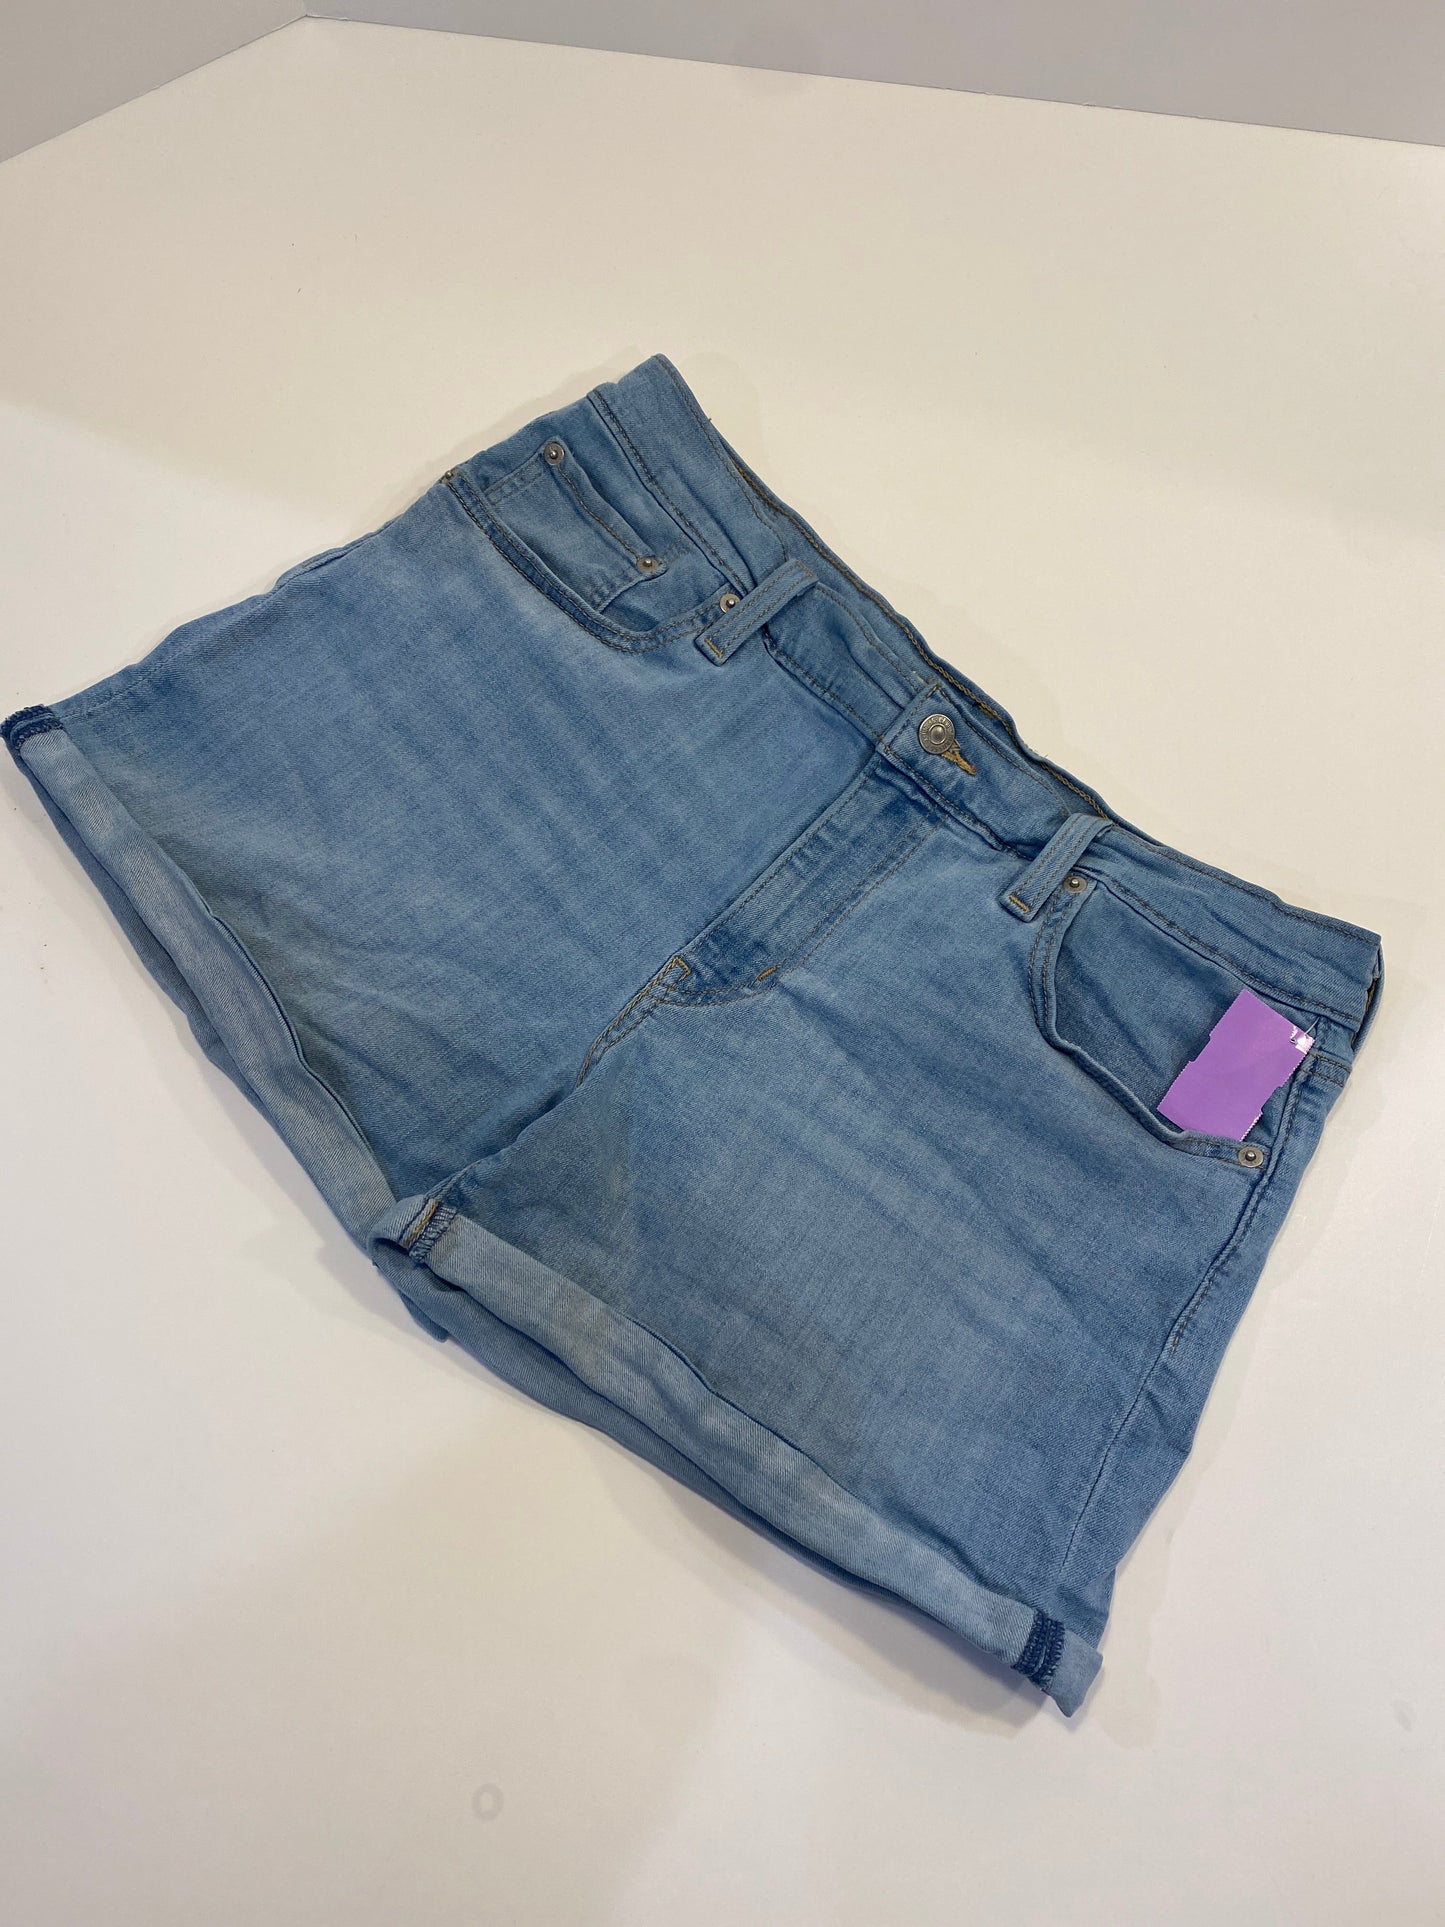 Blue Denim Shorts Levis, Size 12